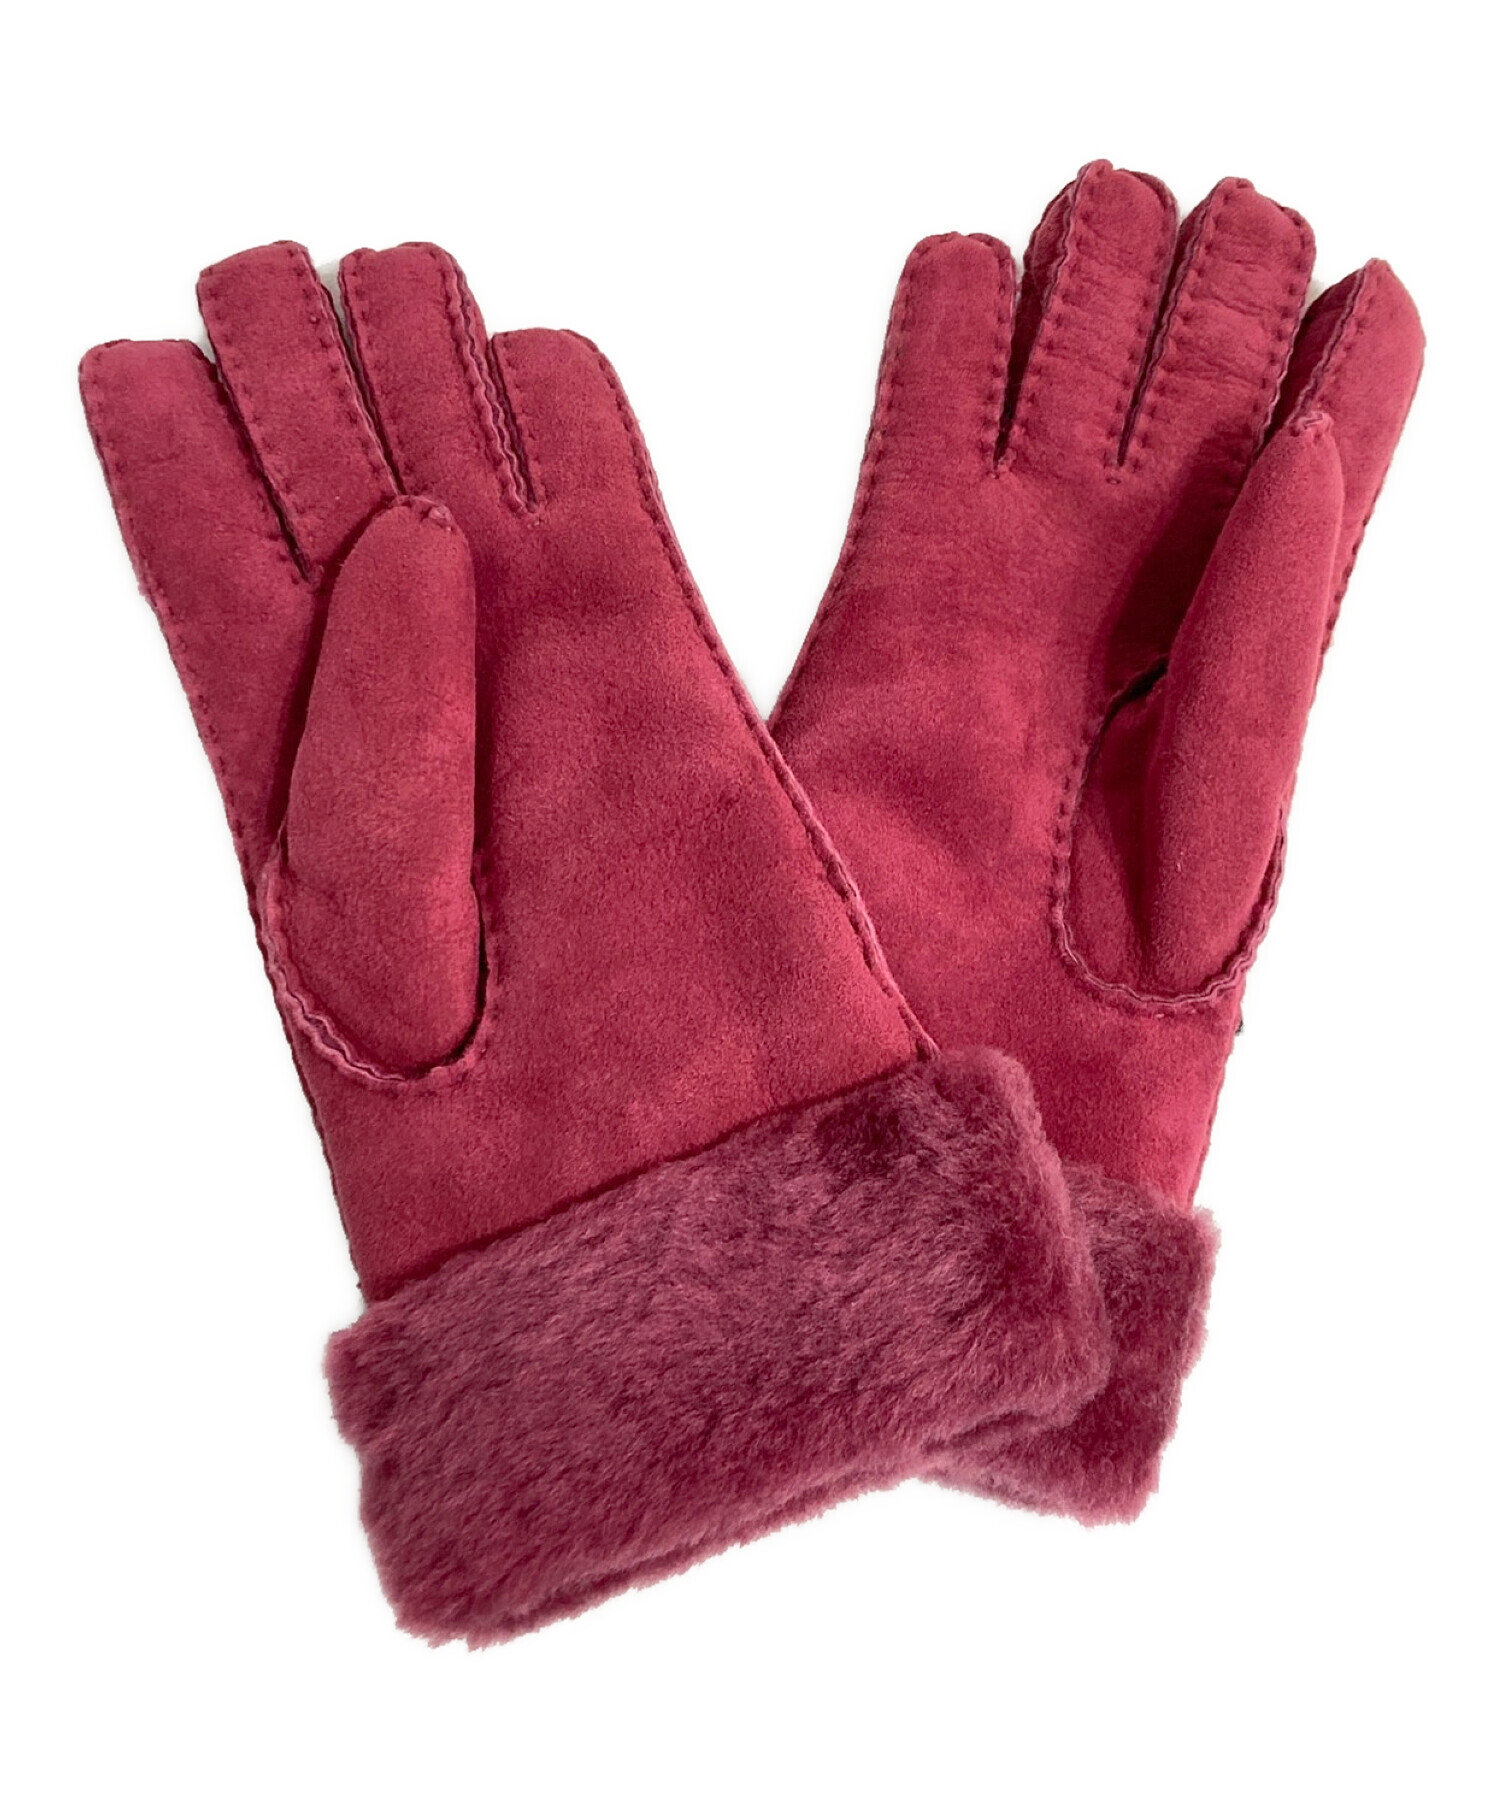 54 2 未使用タグ付き UGG アグ グローブ 手袋 ピンク色 赤色 Mサイズ